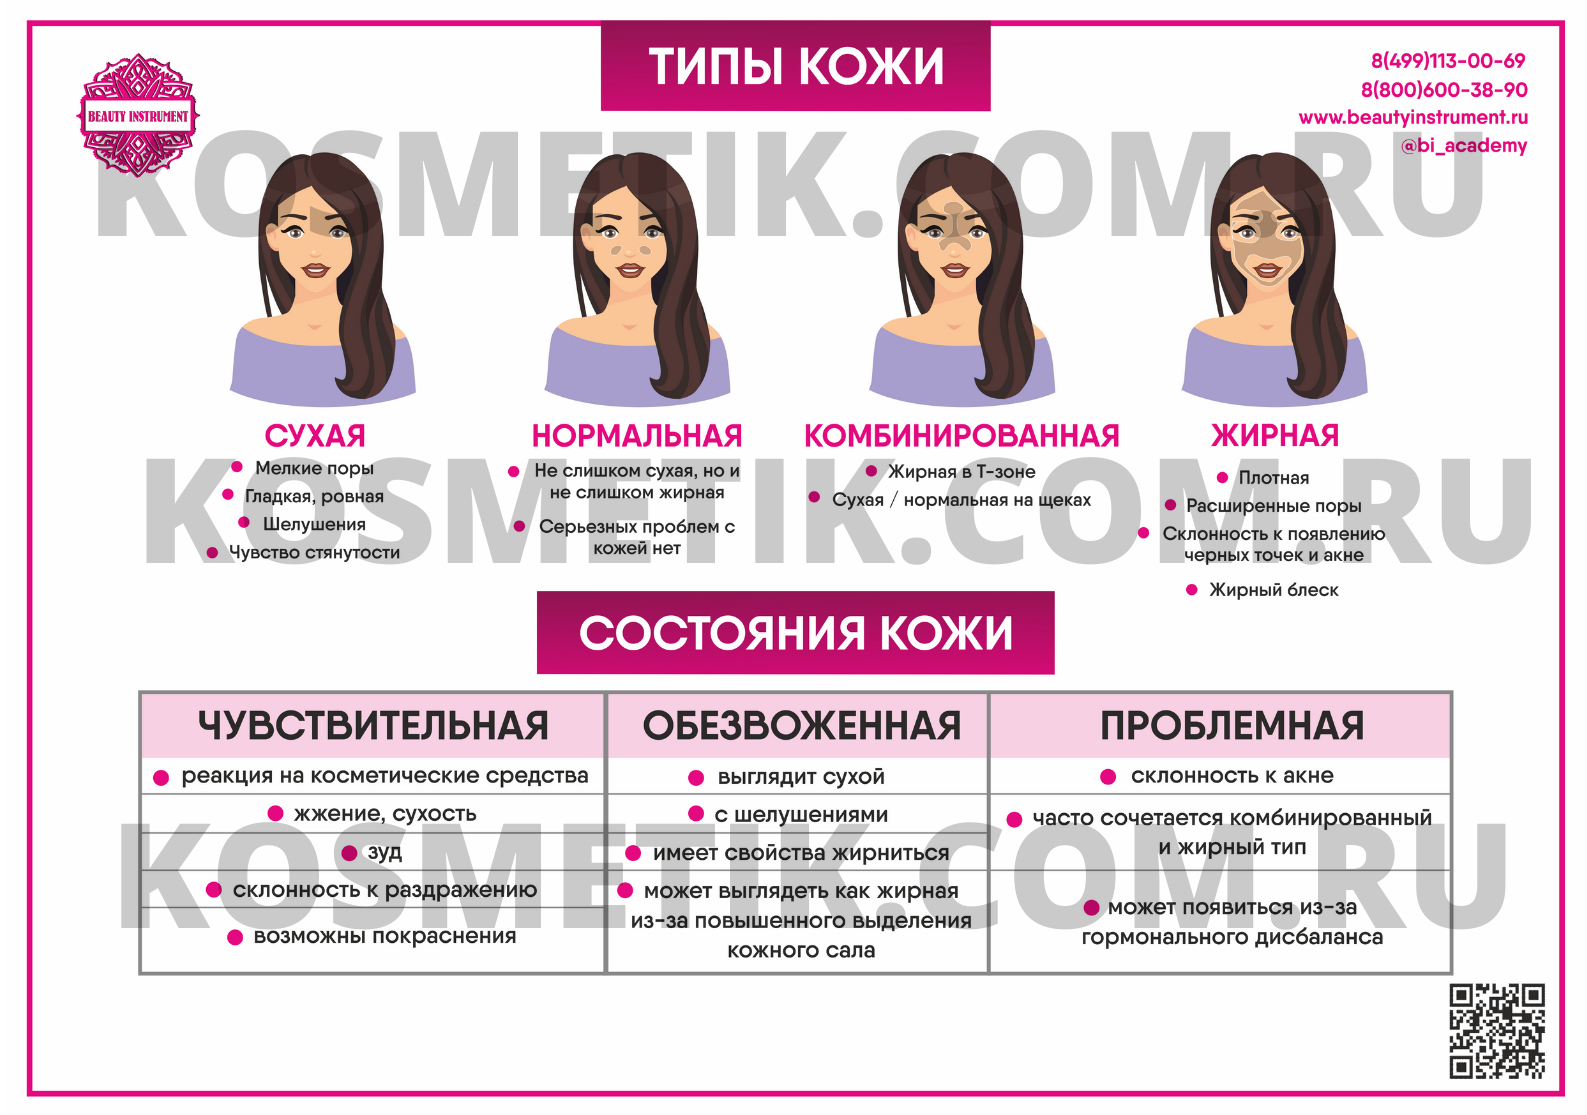 Плакат для косметолога "Типы и состояния кожи"